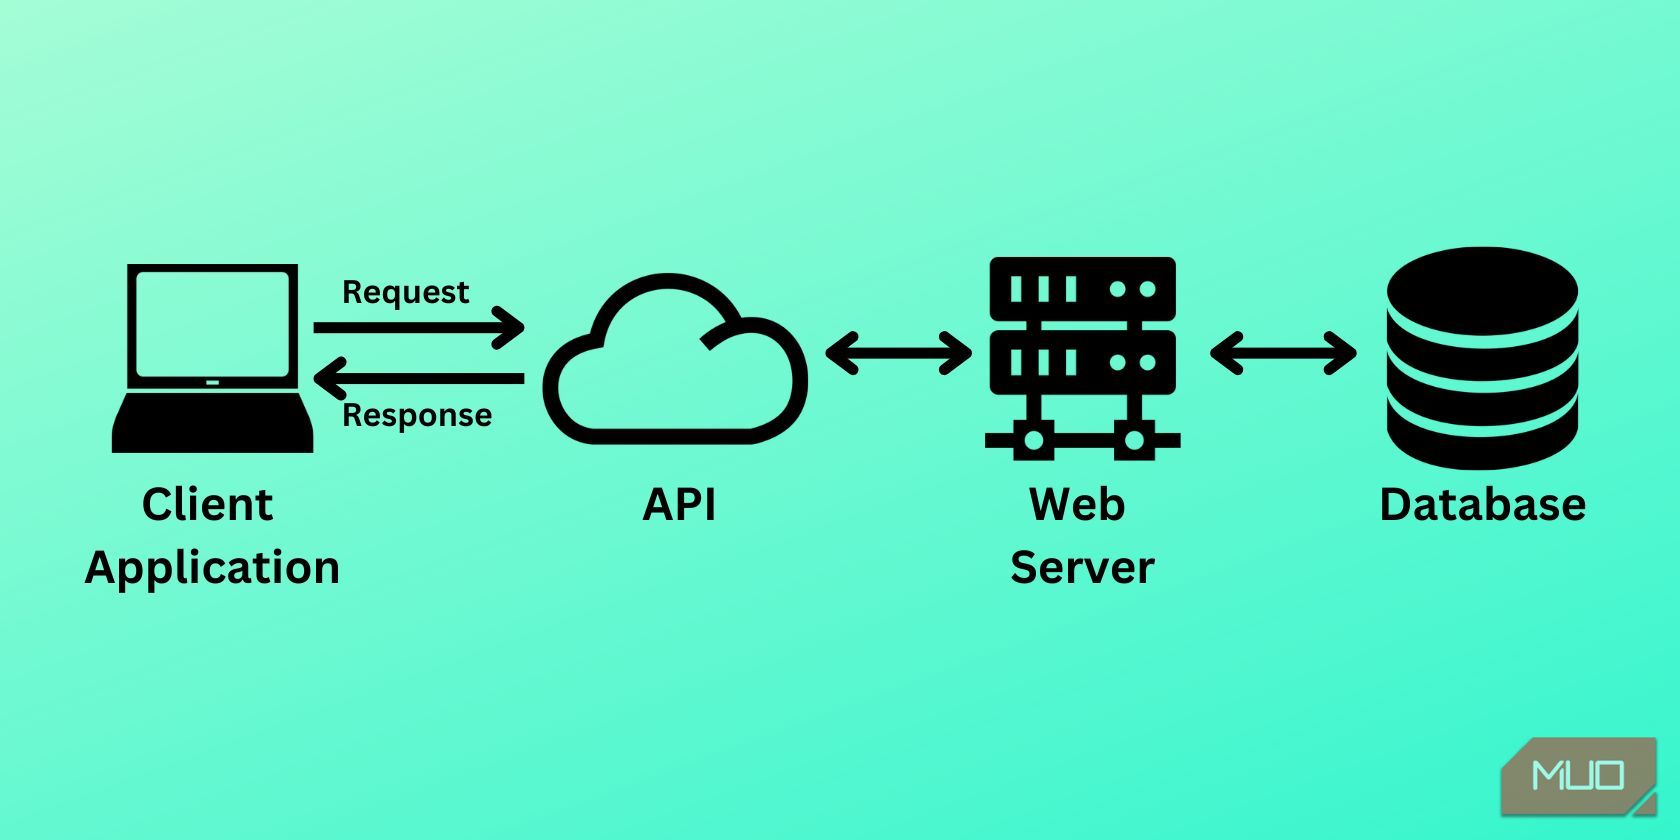 نمودار معماری API - برنامه مشتری، API، وب سرور، پایگاه داده